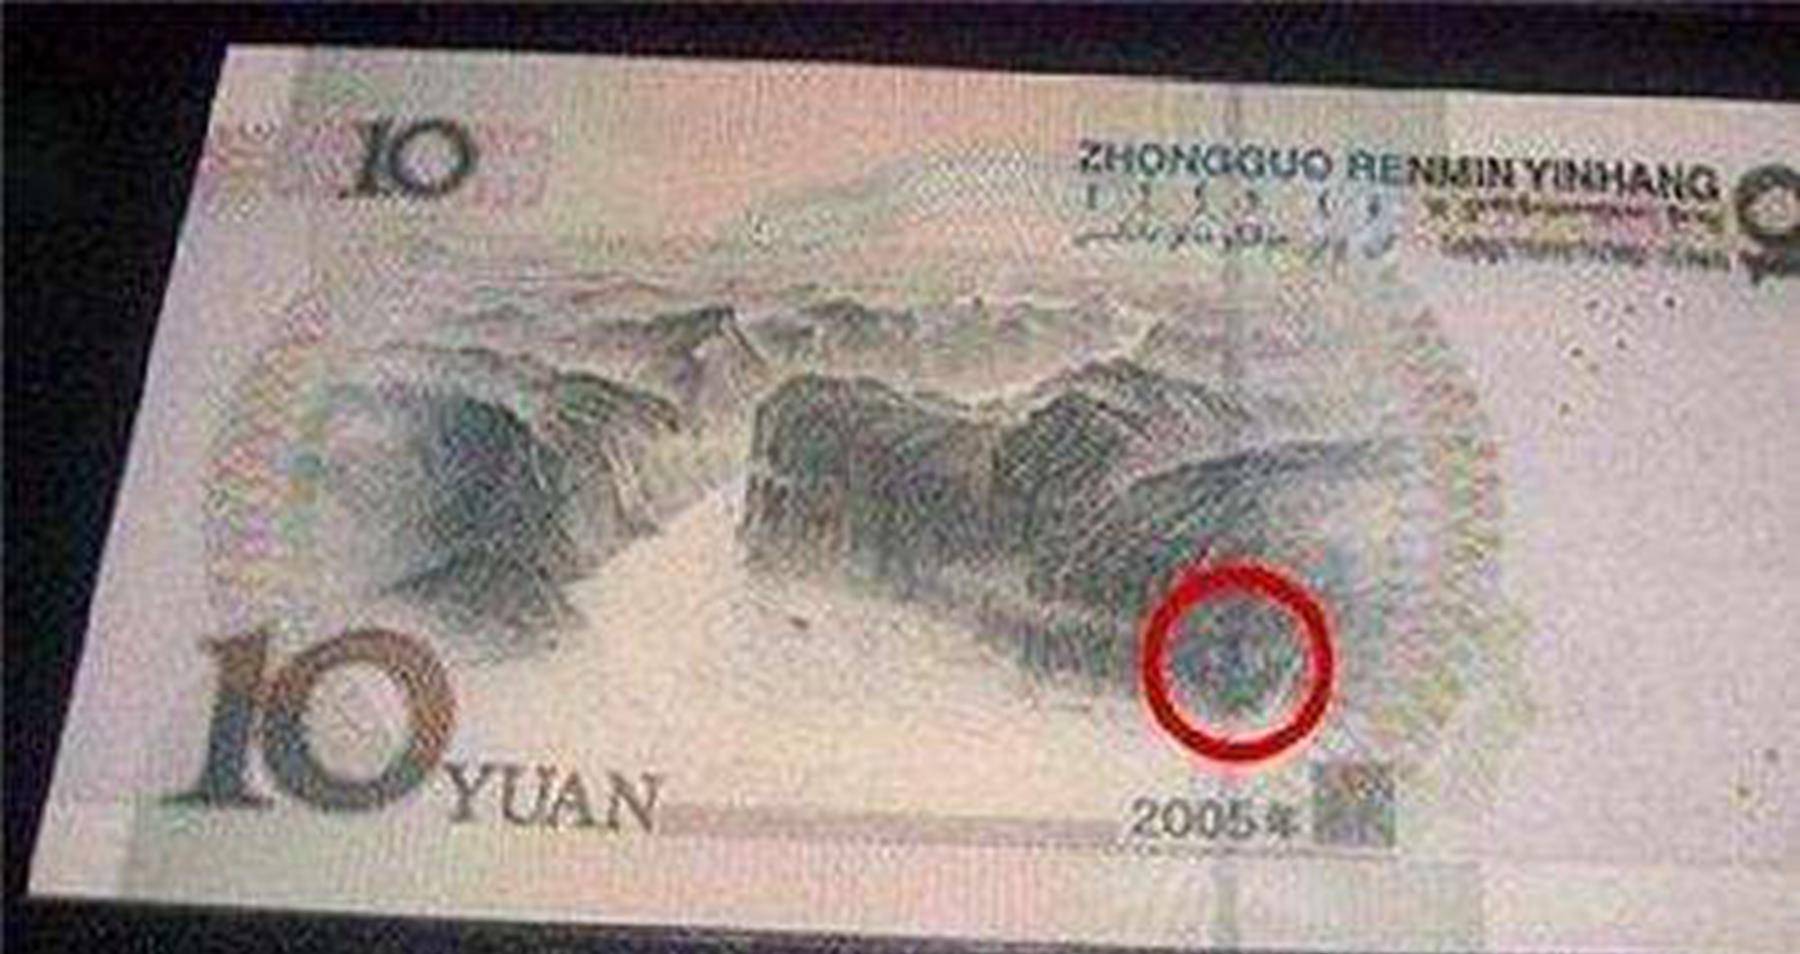 10元人民币上印着一个人的名字，大家知道是谁吗？